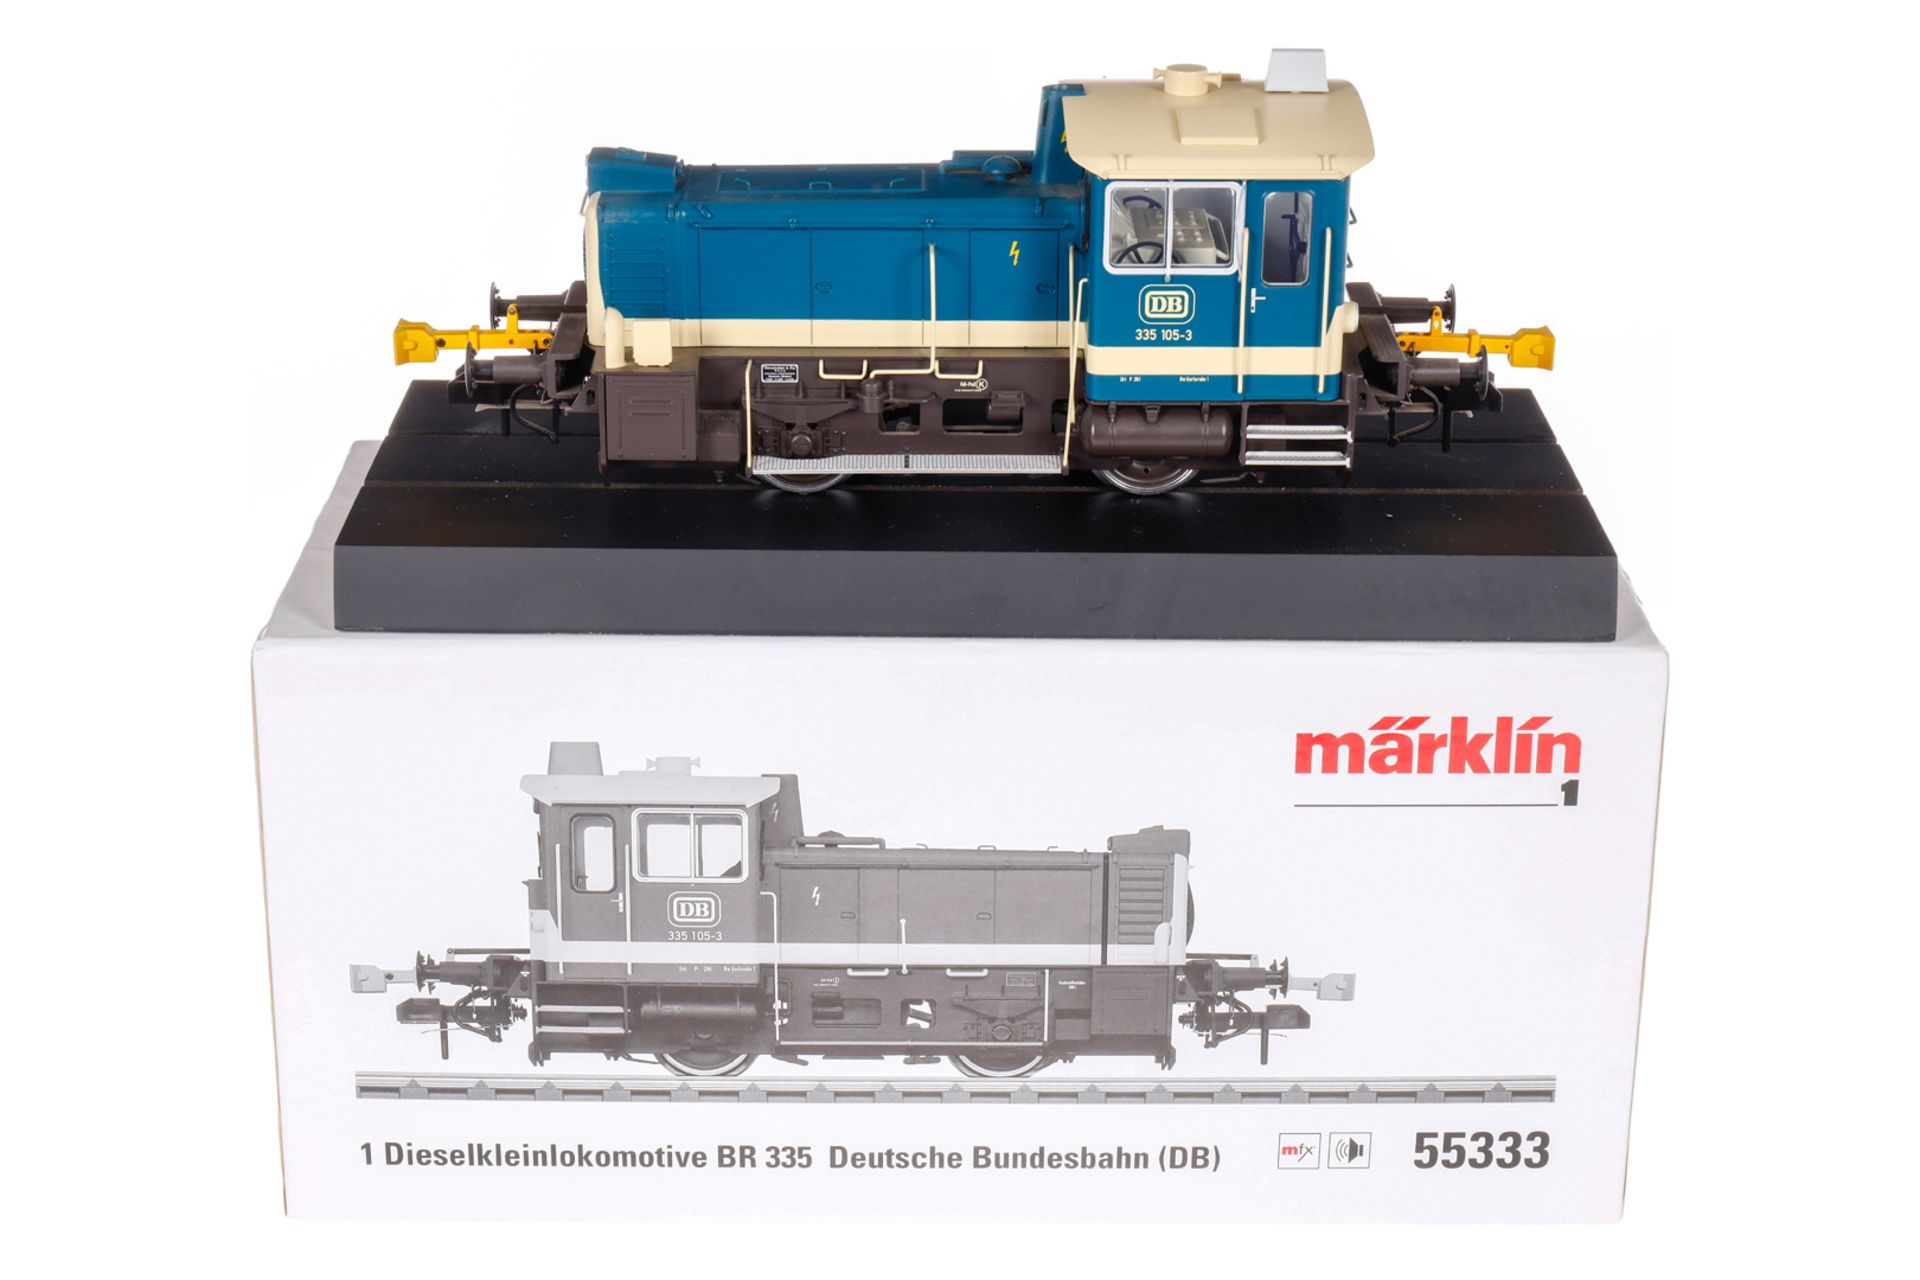 Märklin Dieselkleinlokomotive ”335 105-3” 55333, Spur 1, elektr., türkis/creme, Alterungsspuren, OK,